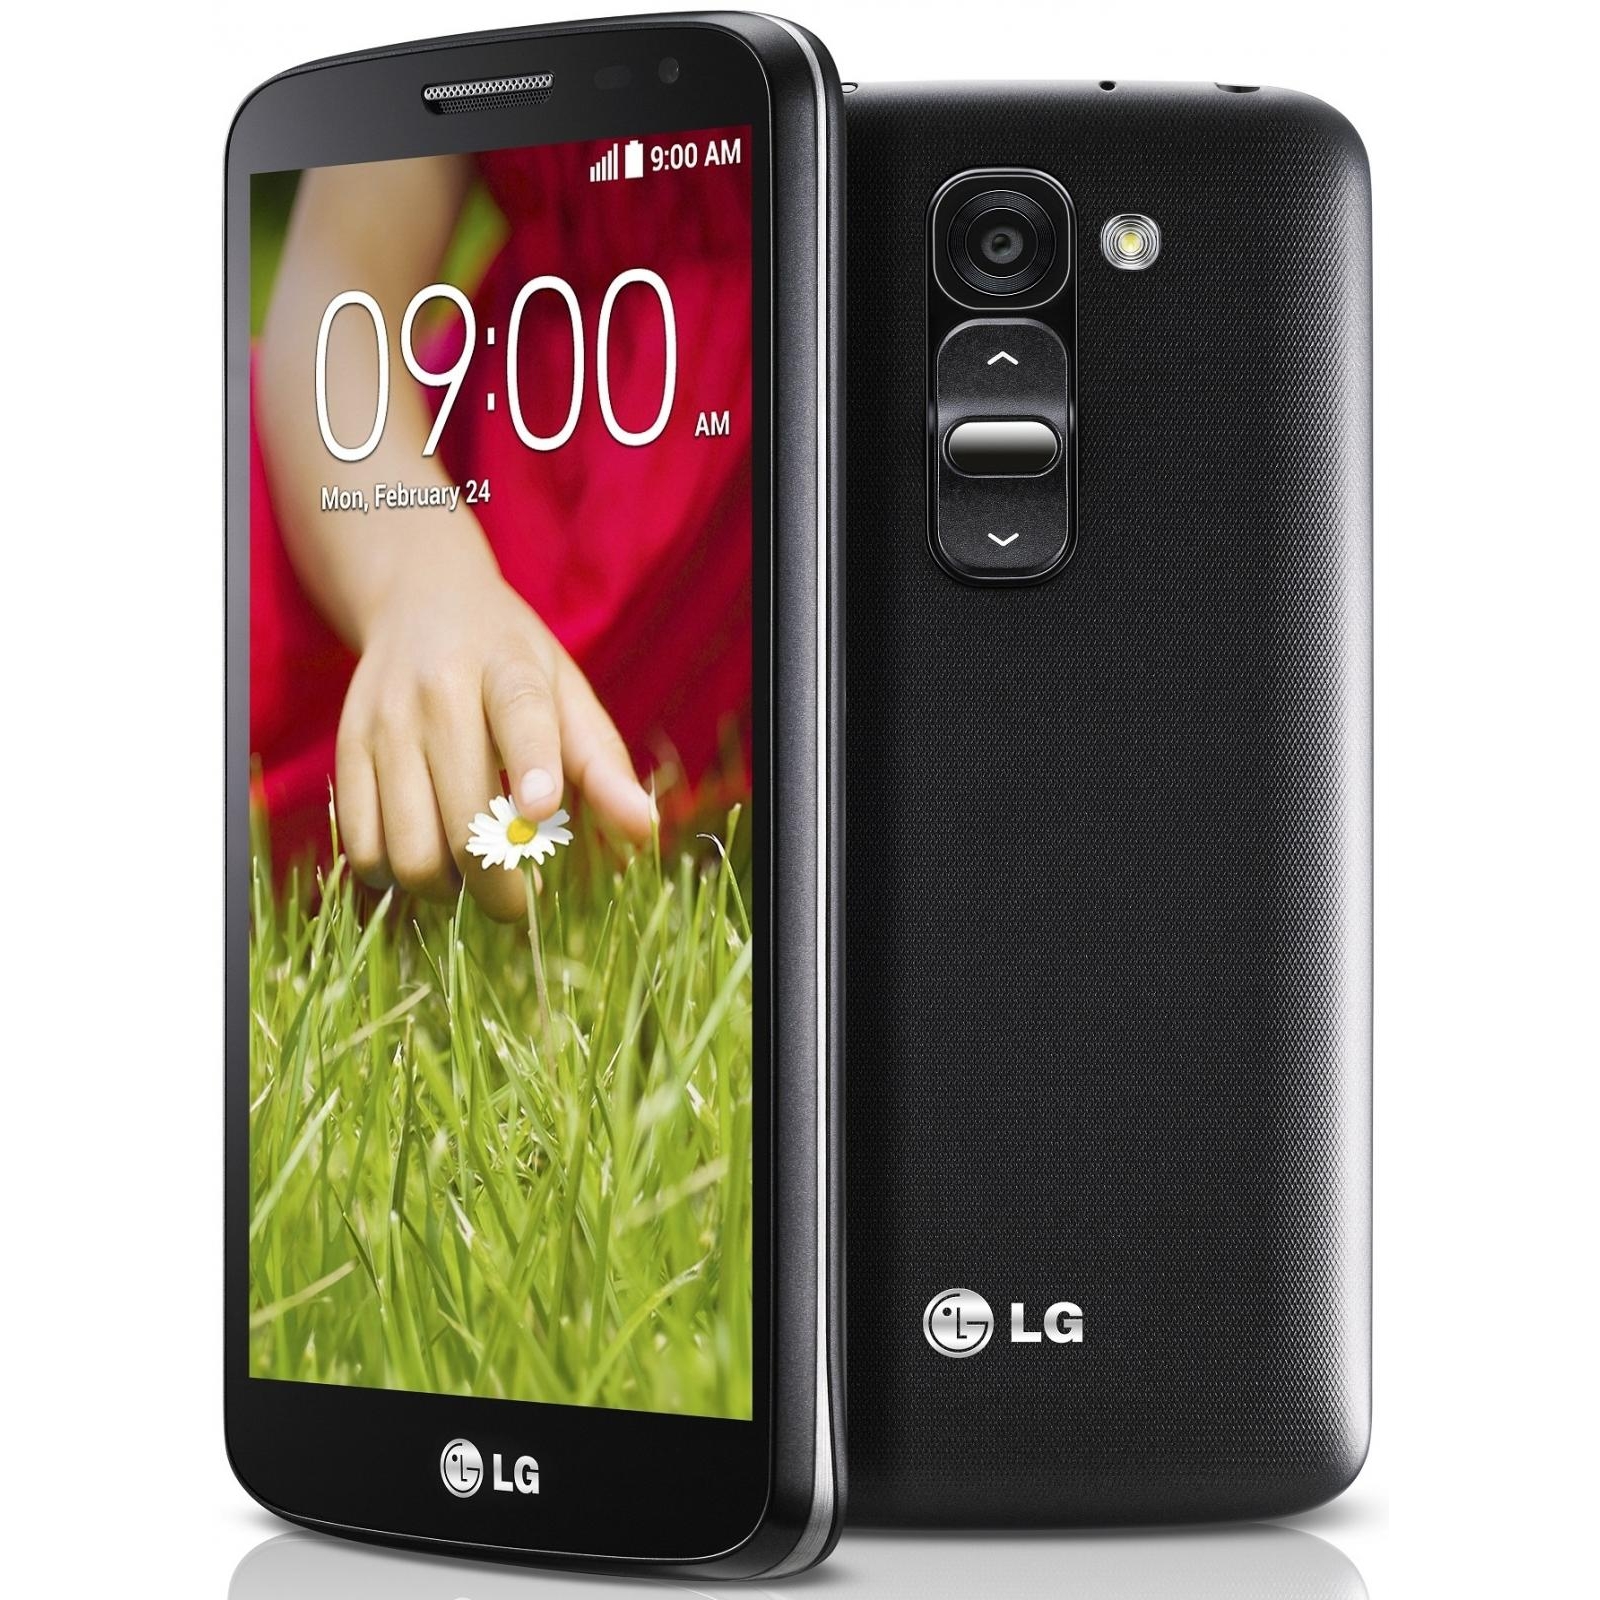 LG D618 G2 mini (Titan Black) купить в интернет-магазине: цены на смартфон  D618 G2 mini (Titan Black) - отзывы и обзоры, фото и характеристики.  Сравнить предложения в Украине: Киев, Харьков, Одесса, Днепр